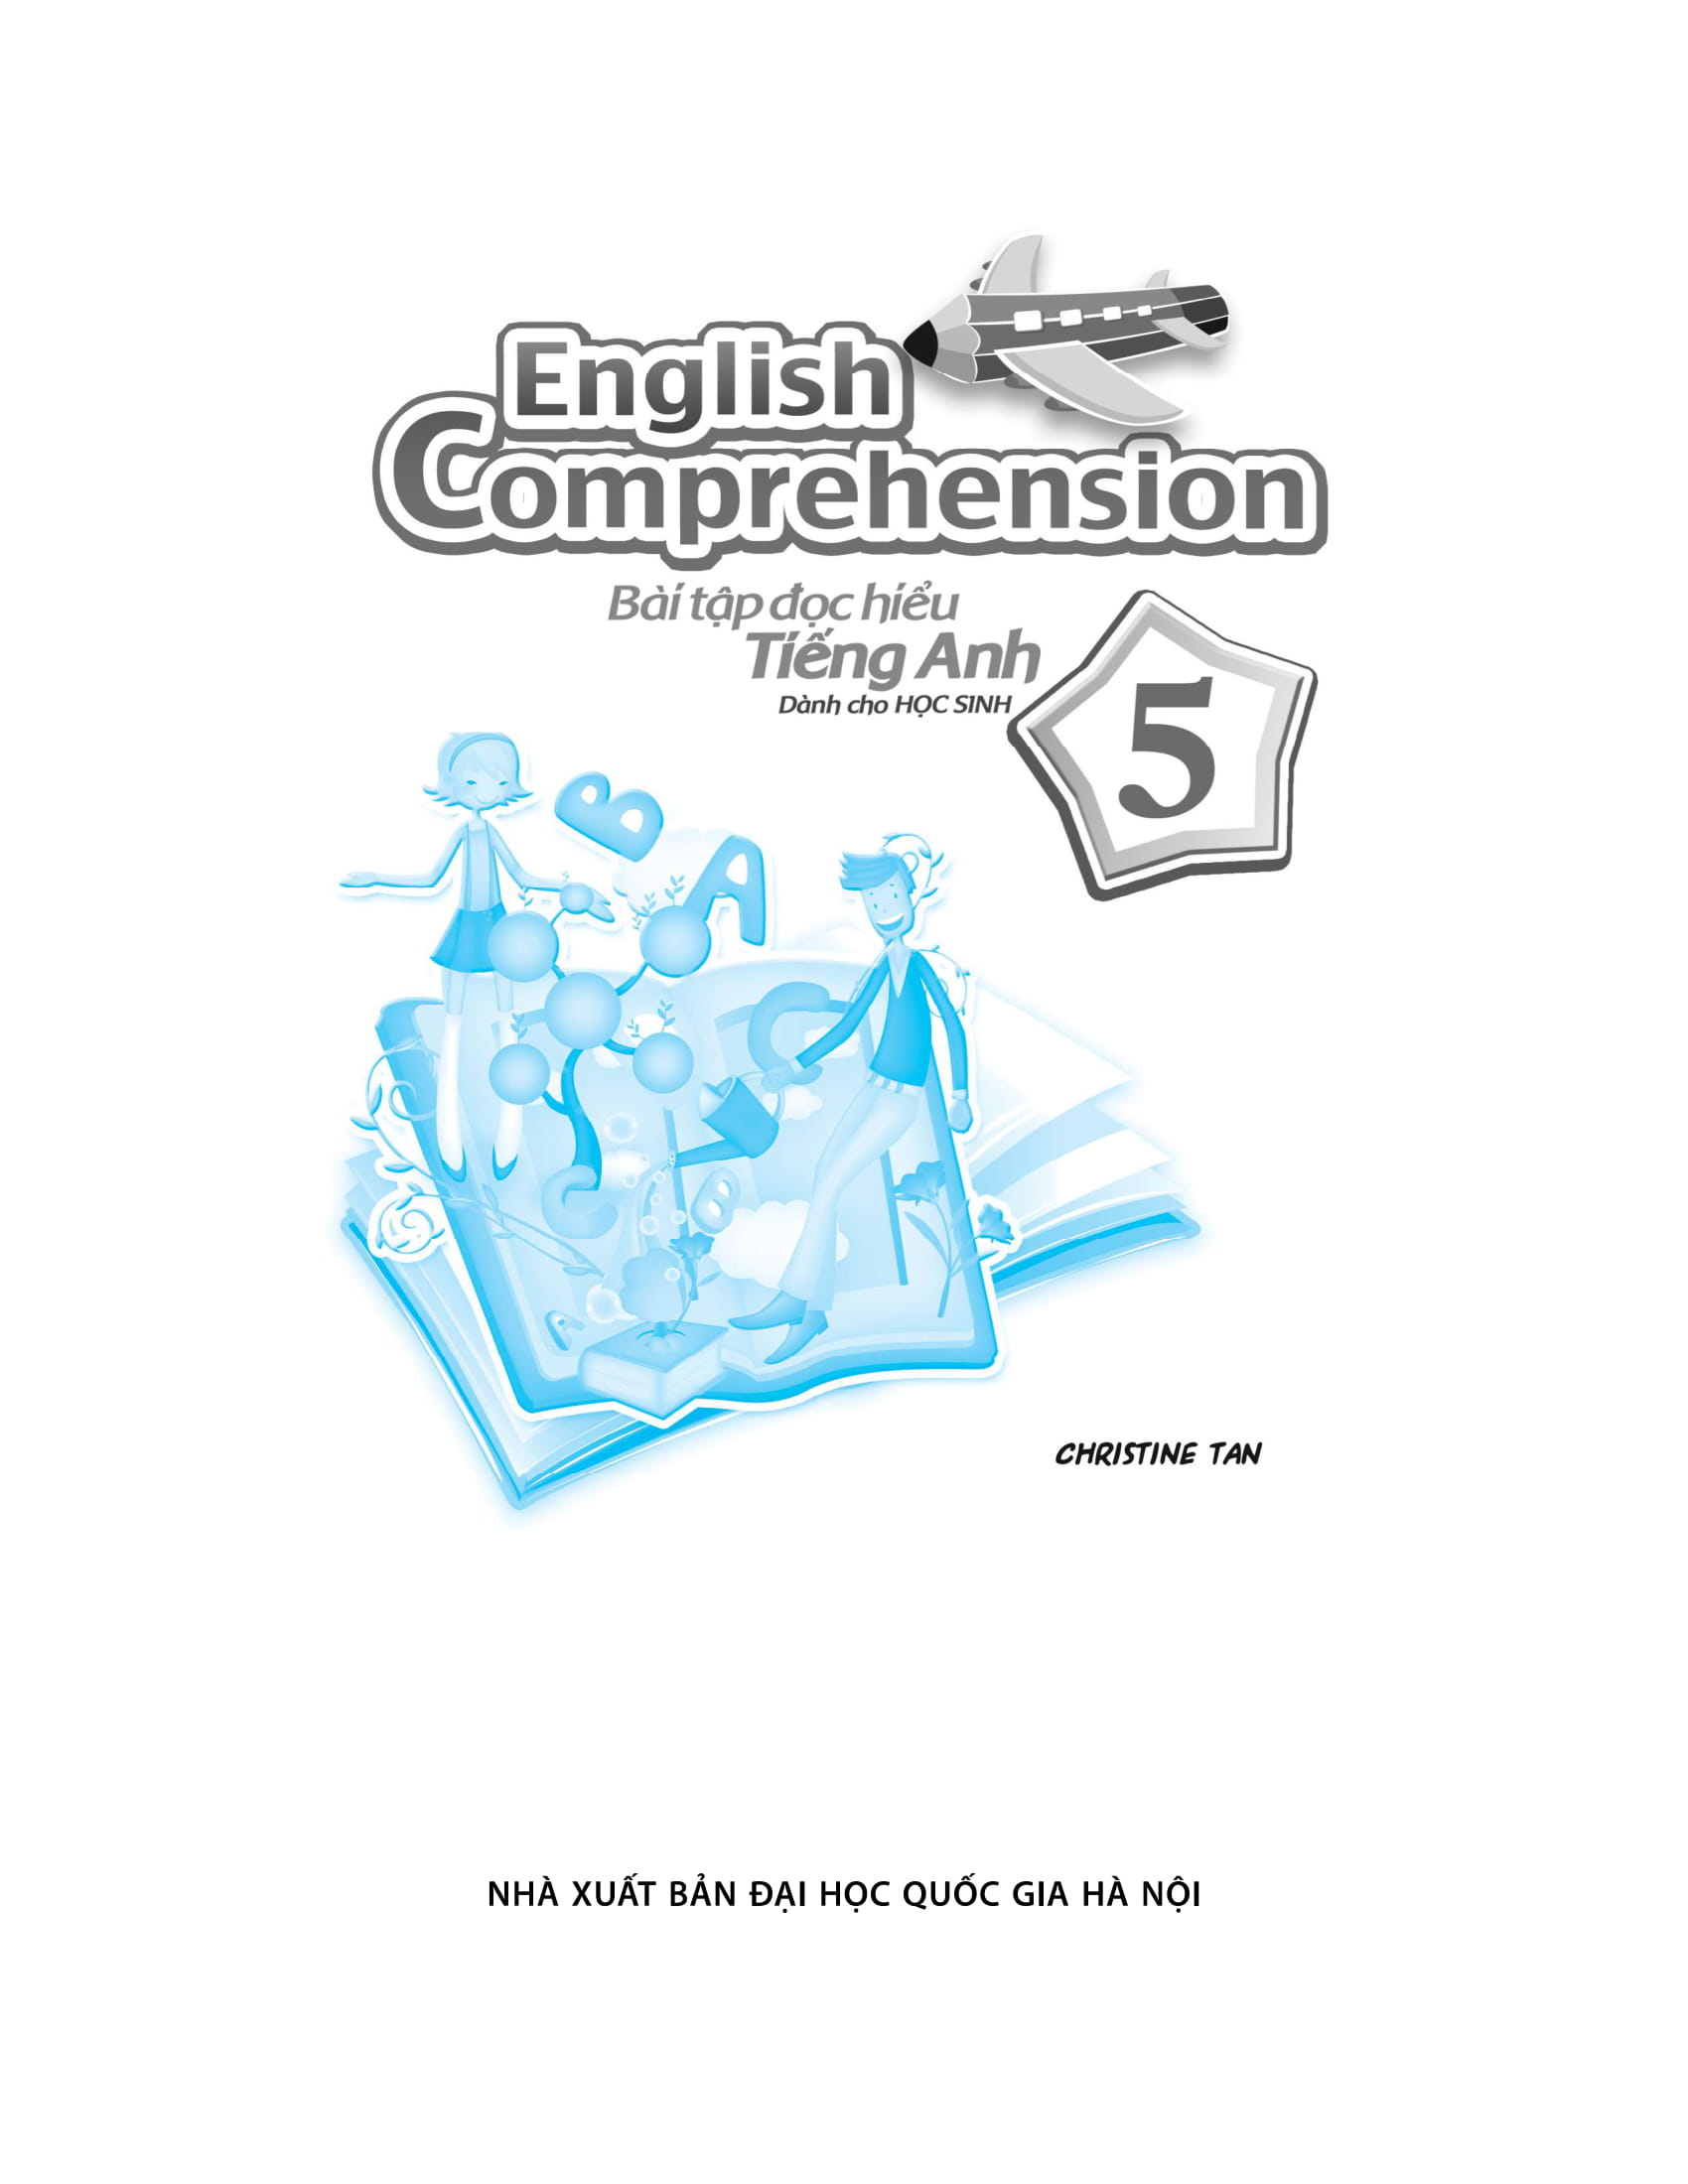 English Comprehension - Bài Tập Đọc Hiểu Tiếng Anh Dành Cho Học Sinh 5 PDF